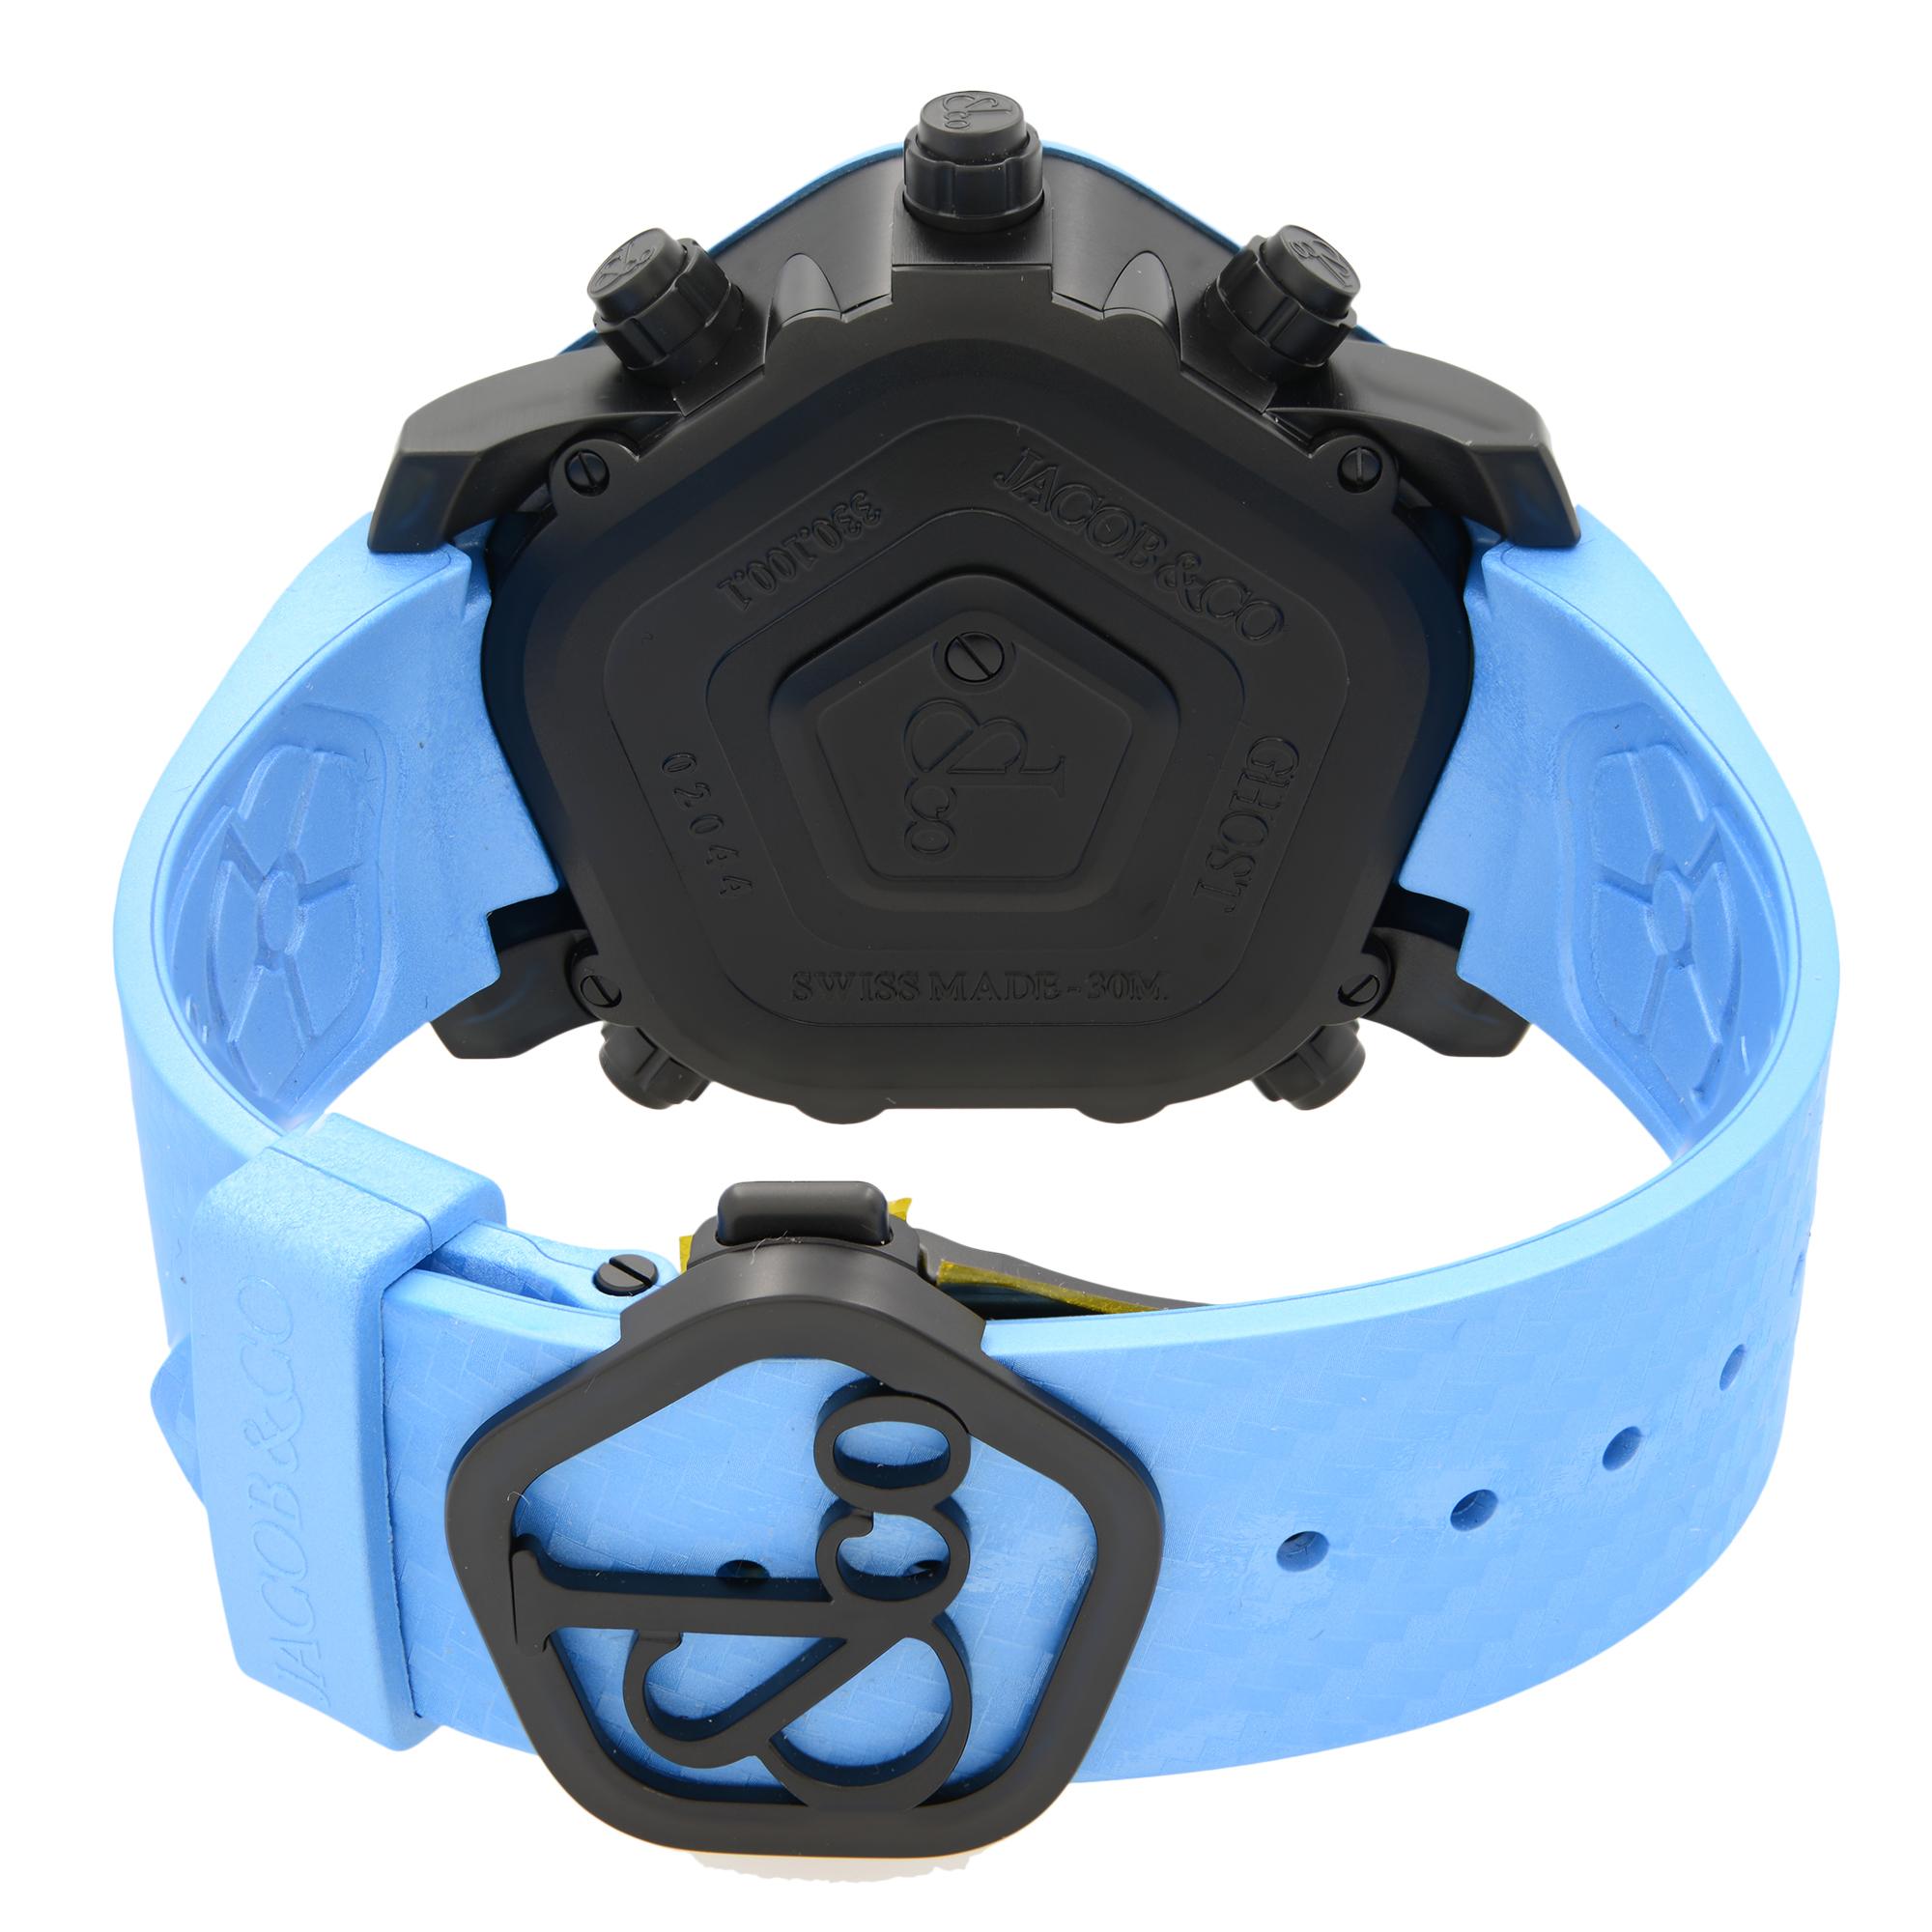 Jacob & Co. Montre Ghost 5 Time Zone bleue avec lunette en carbone pour hommes GH100.11.NS.MC.ANL4D Pour hommes en vente